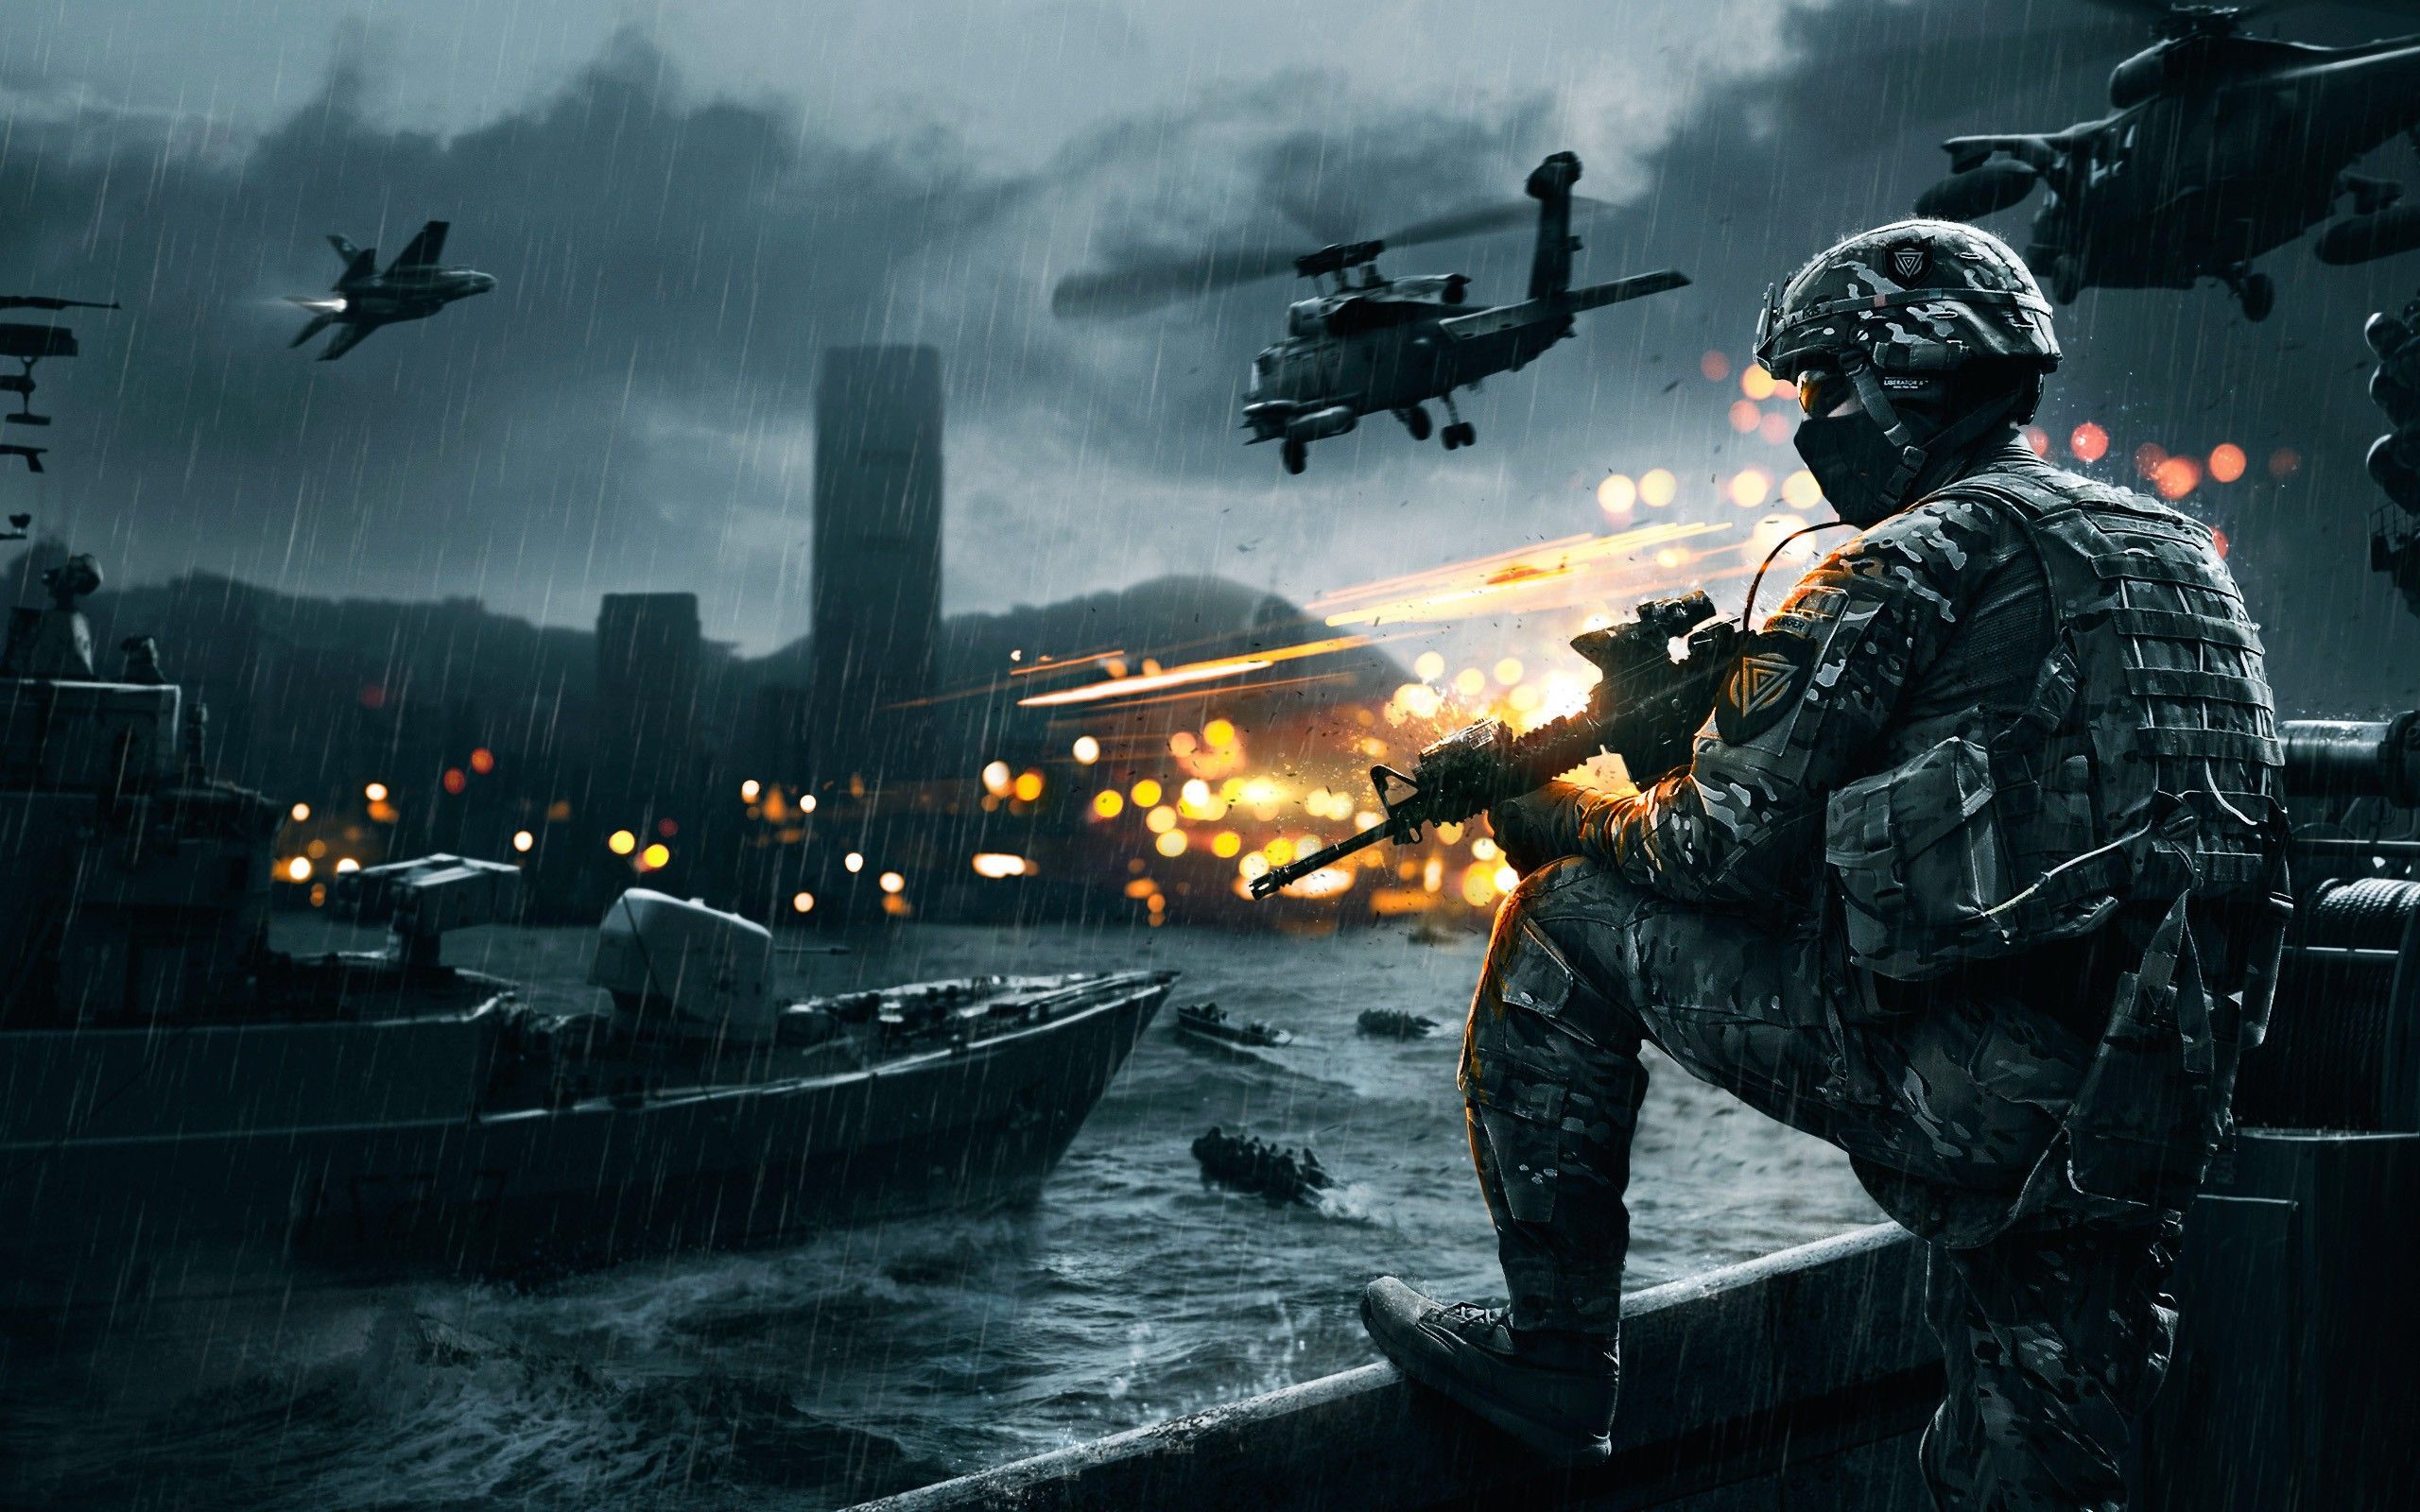 Battlefield 4 HD Wallpaper, Battlefield 4 Images Cool Backgrounds